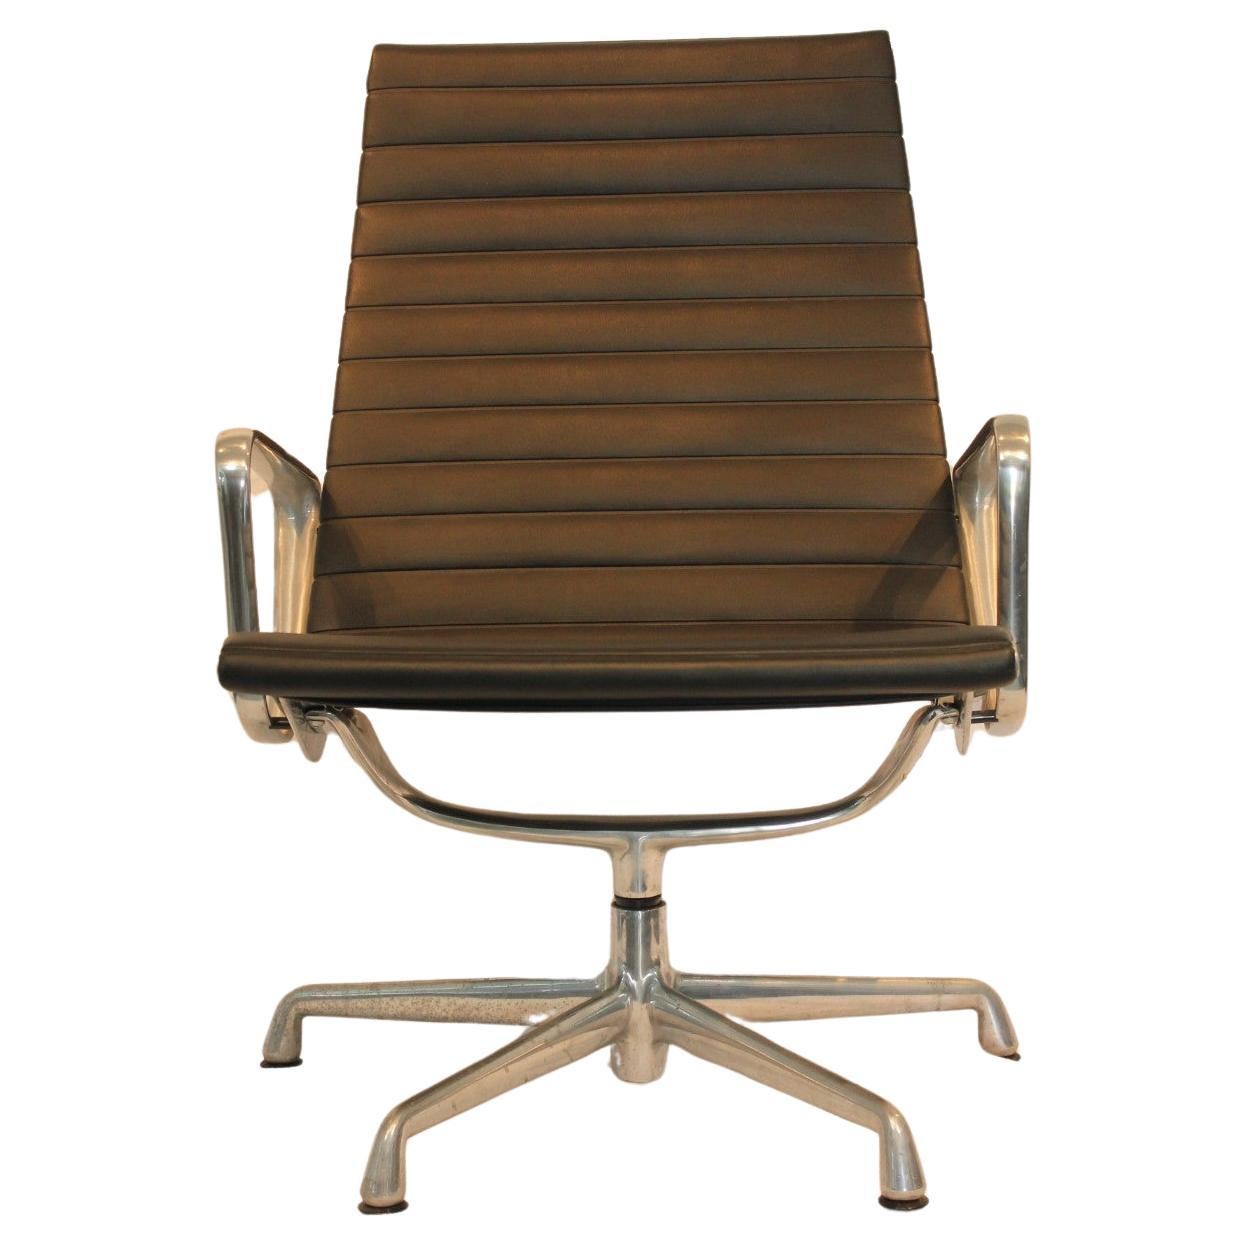 Chaise longue Eames en aluminium moderne du milieu du 20e siècle, Herman Miller, vers 1970